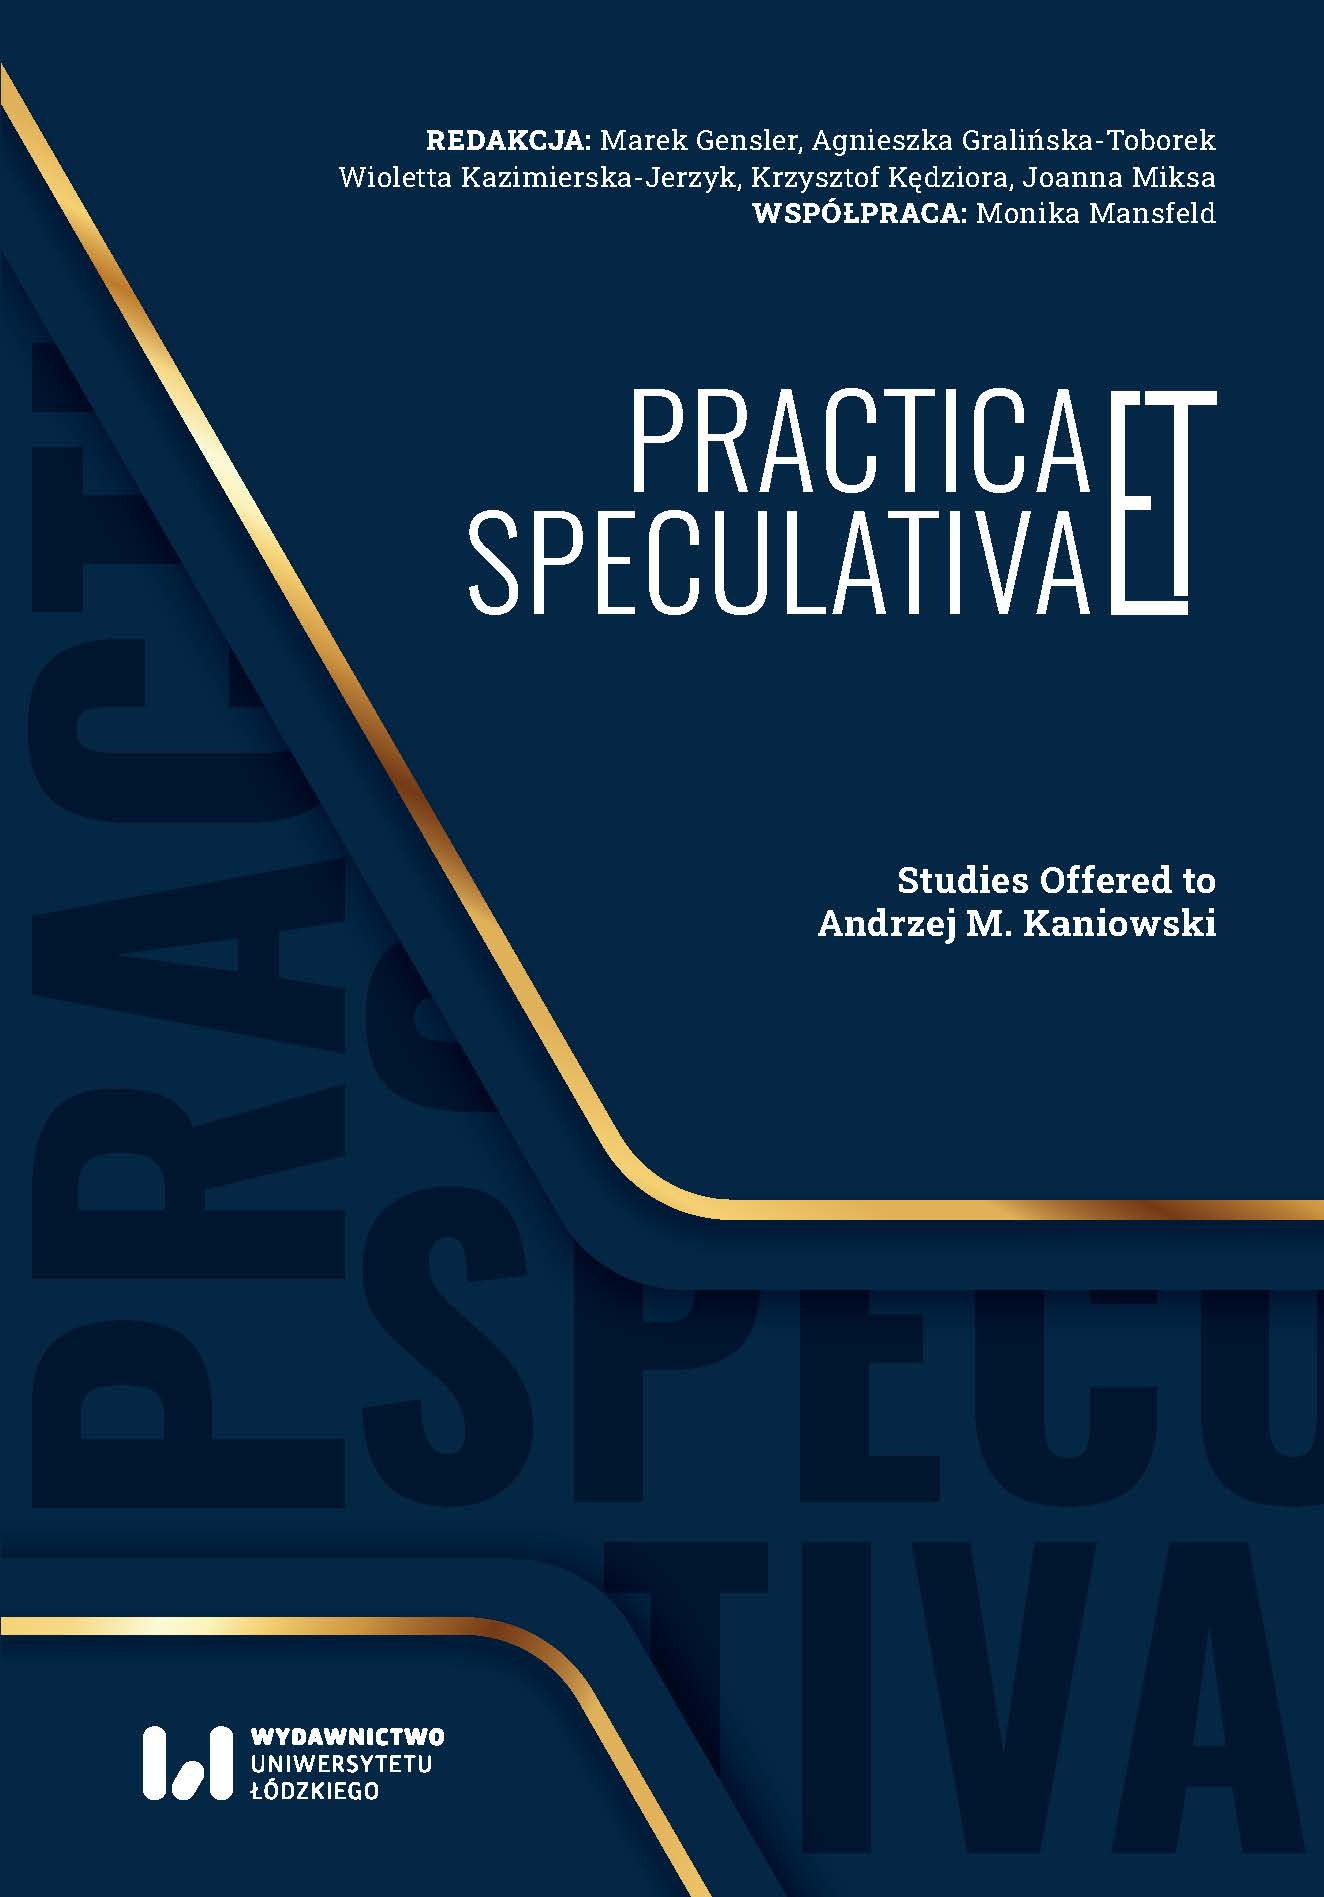 Leszek Kołakowski on rationalism. Critical analysis Cover Image